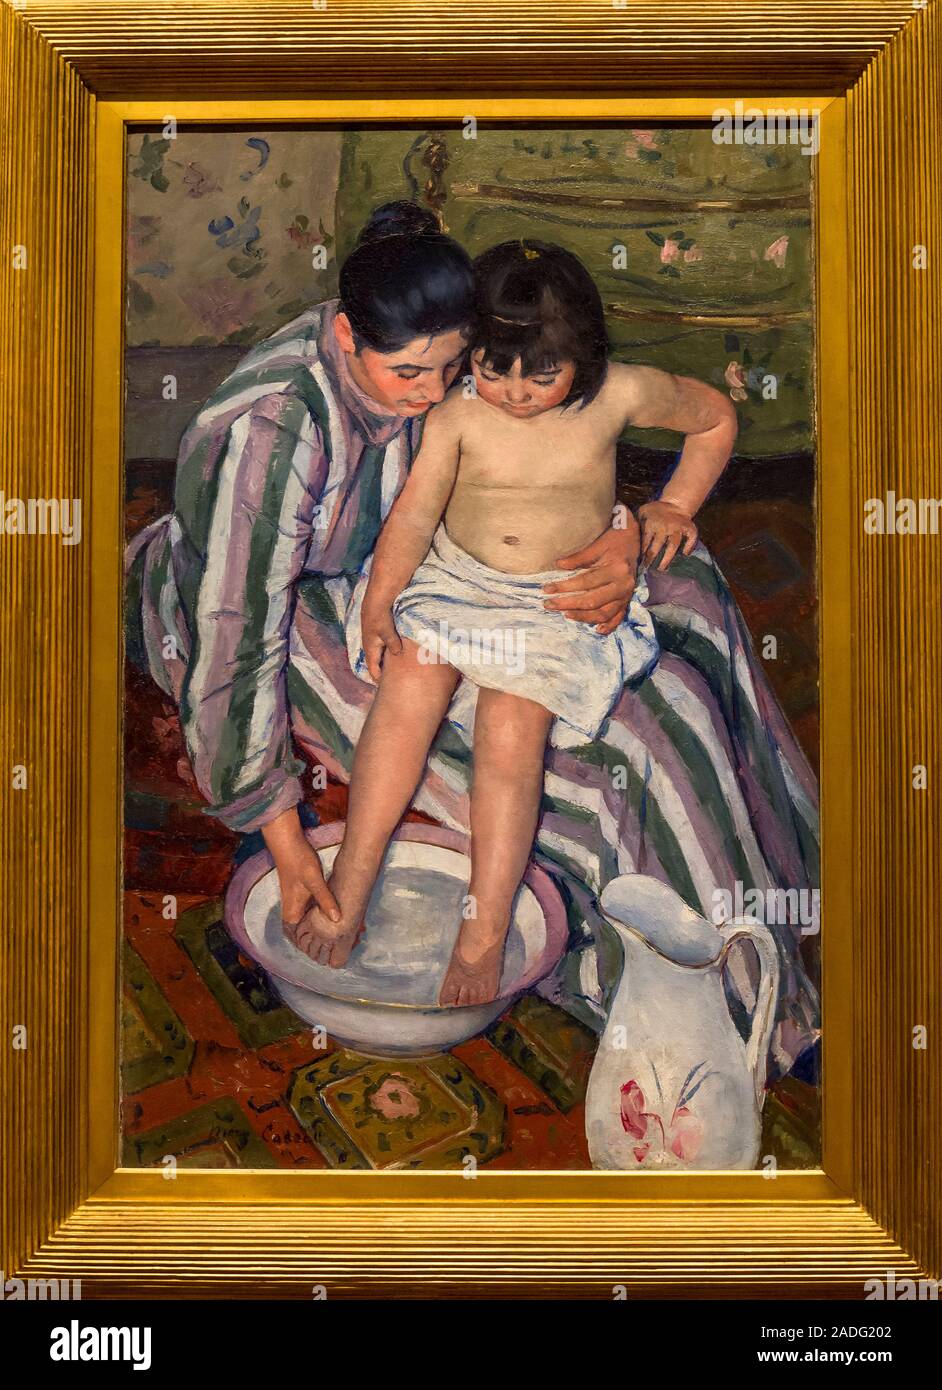 Mary Cassatt peinture la baignoire, l'Art Institute of Chicago, Chicago, Illinois, États-Unis Banque D'Images